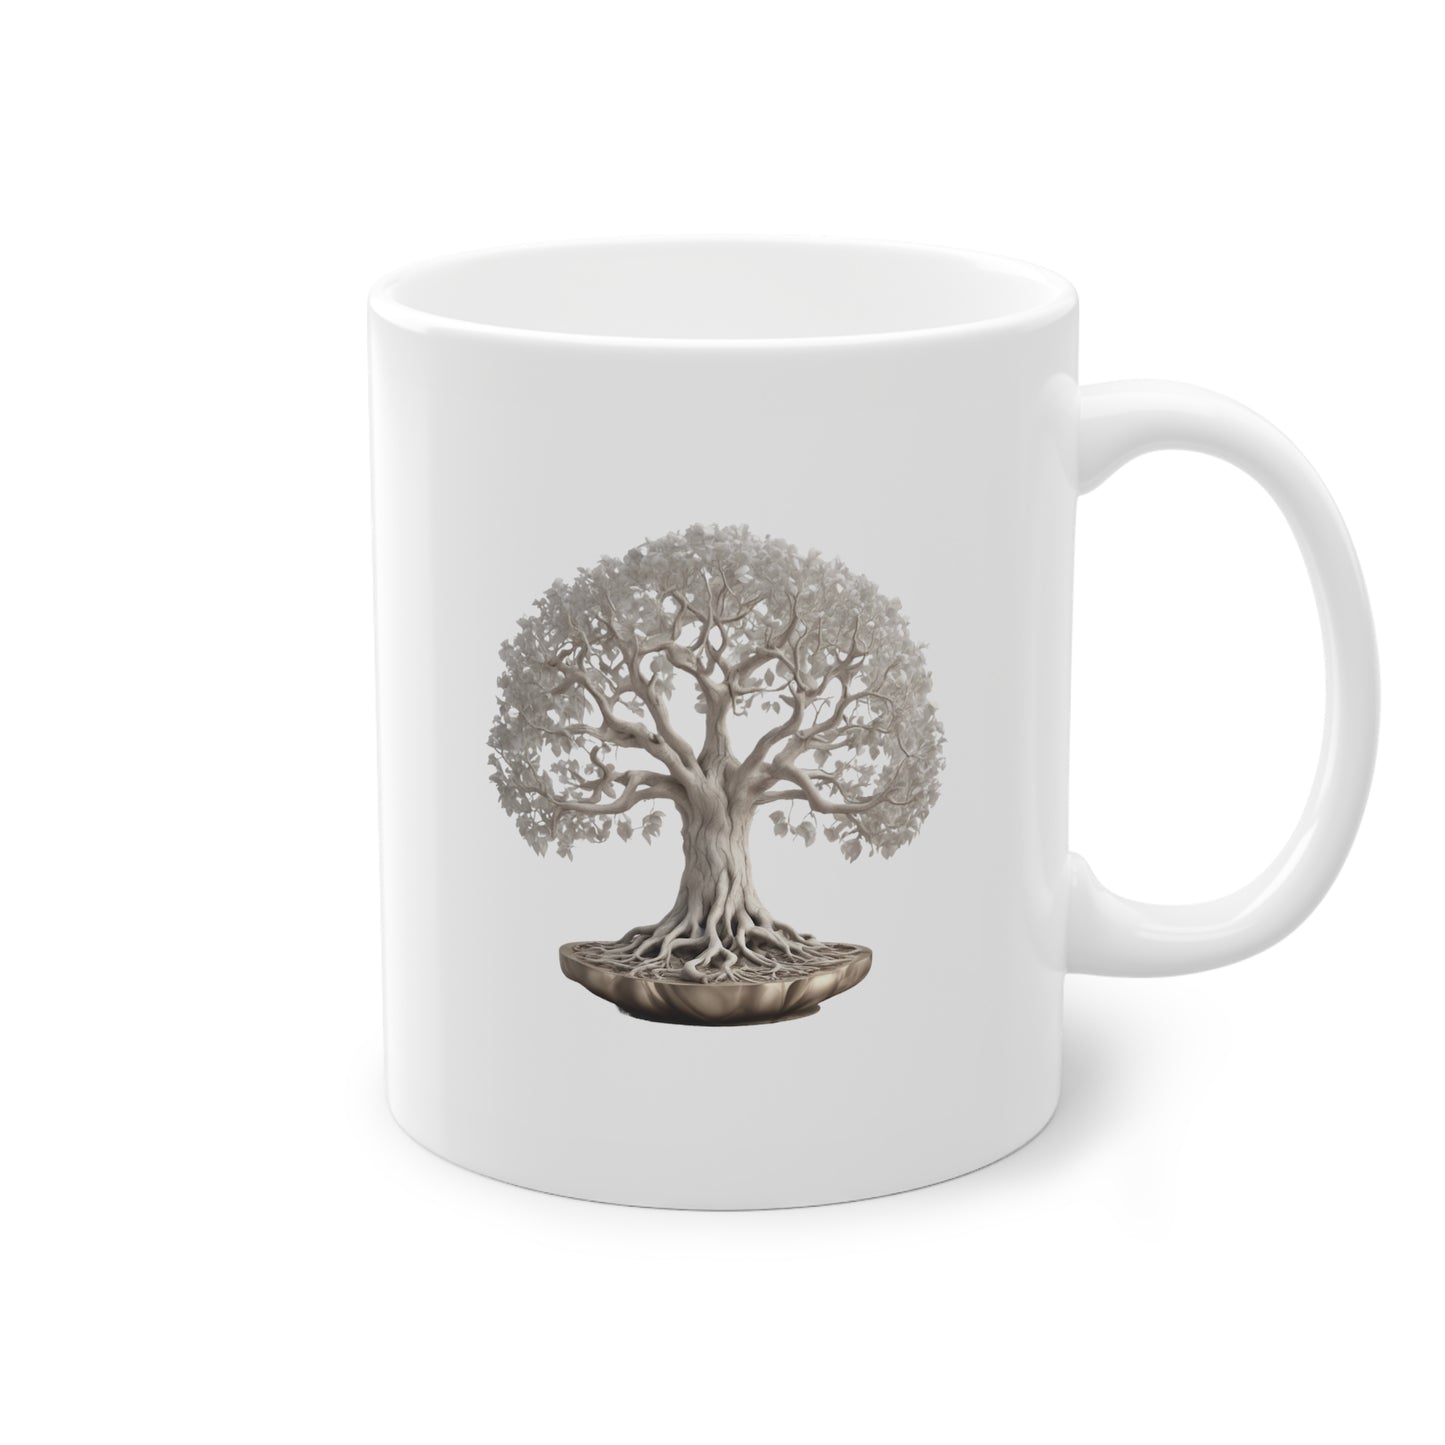 Weisse Tasse mit Lebensbaum 2